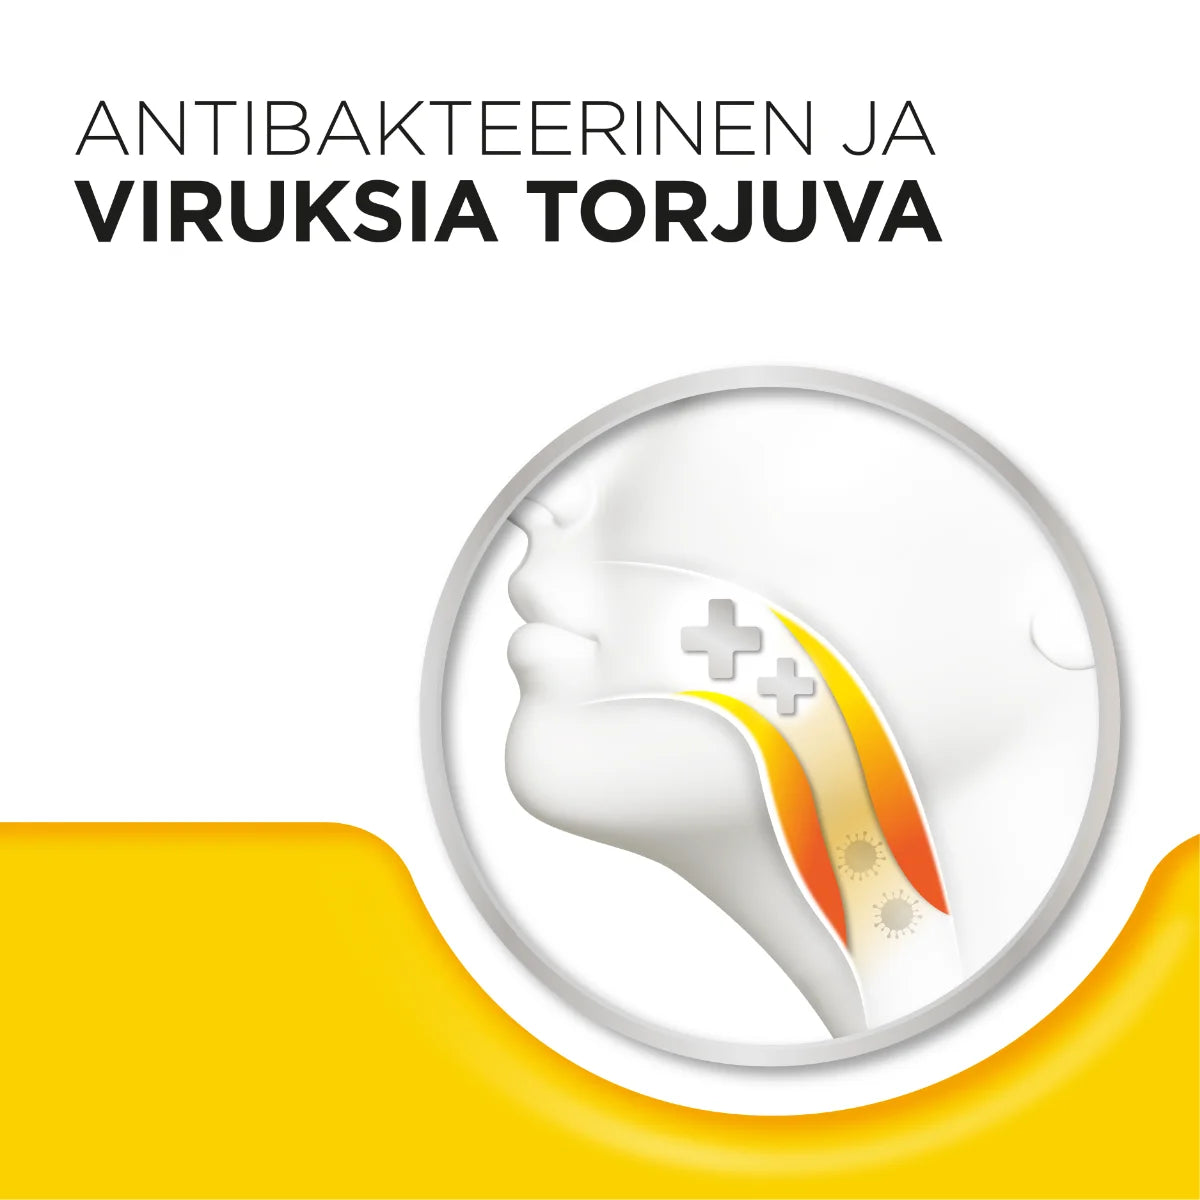 STREPSILS Hunaja & Sitruuna 0,6 mg/1,2 mg imeskelytabletti antibakteerinen ja viruksia torjuva